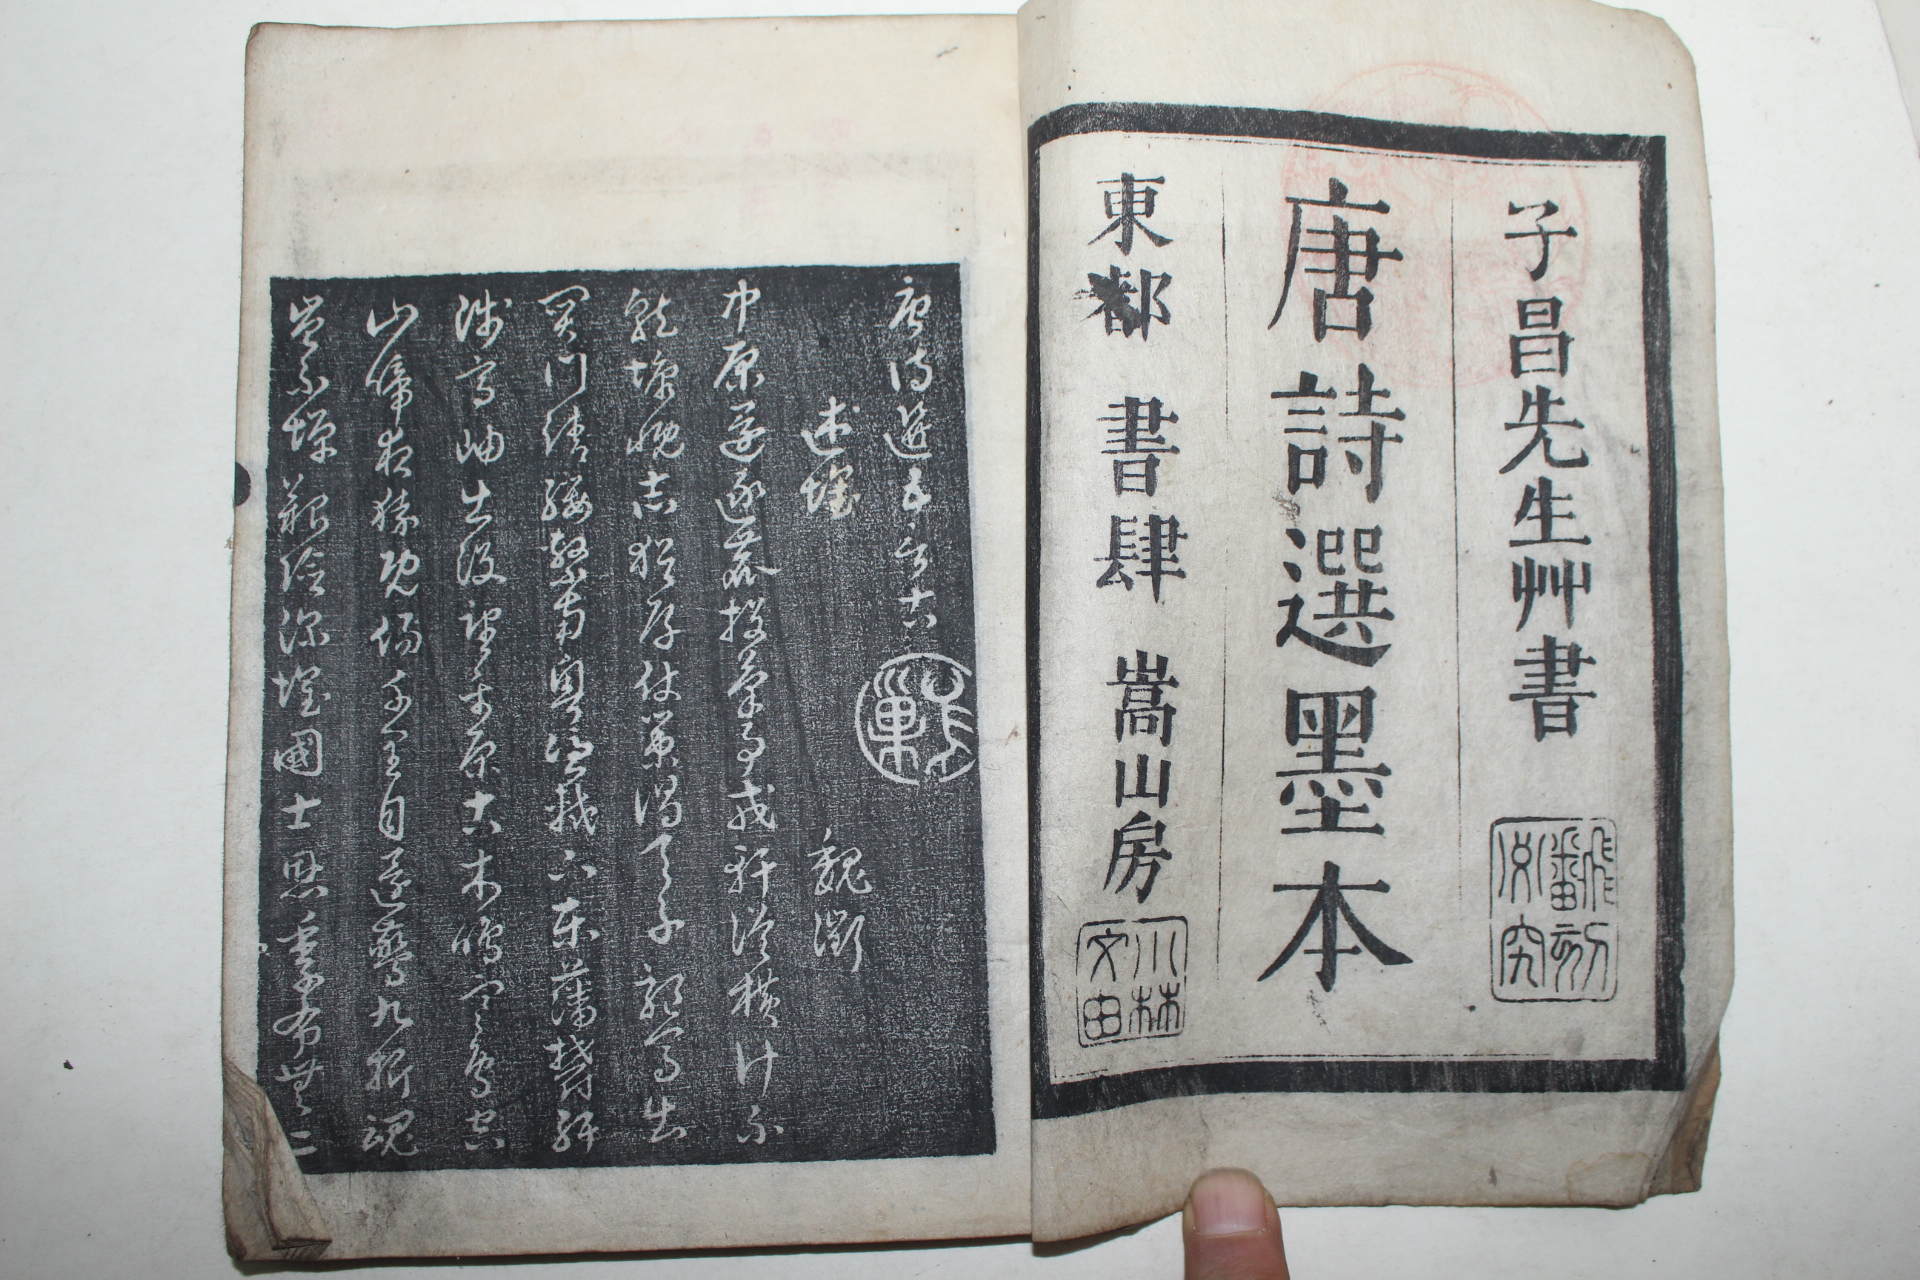 1757년(寶曆丁丑年) 일본목판본 당시선묵본(唐詩選墨本) 3책완질